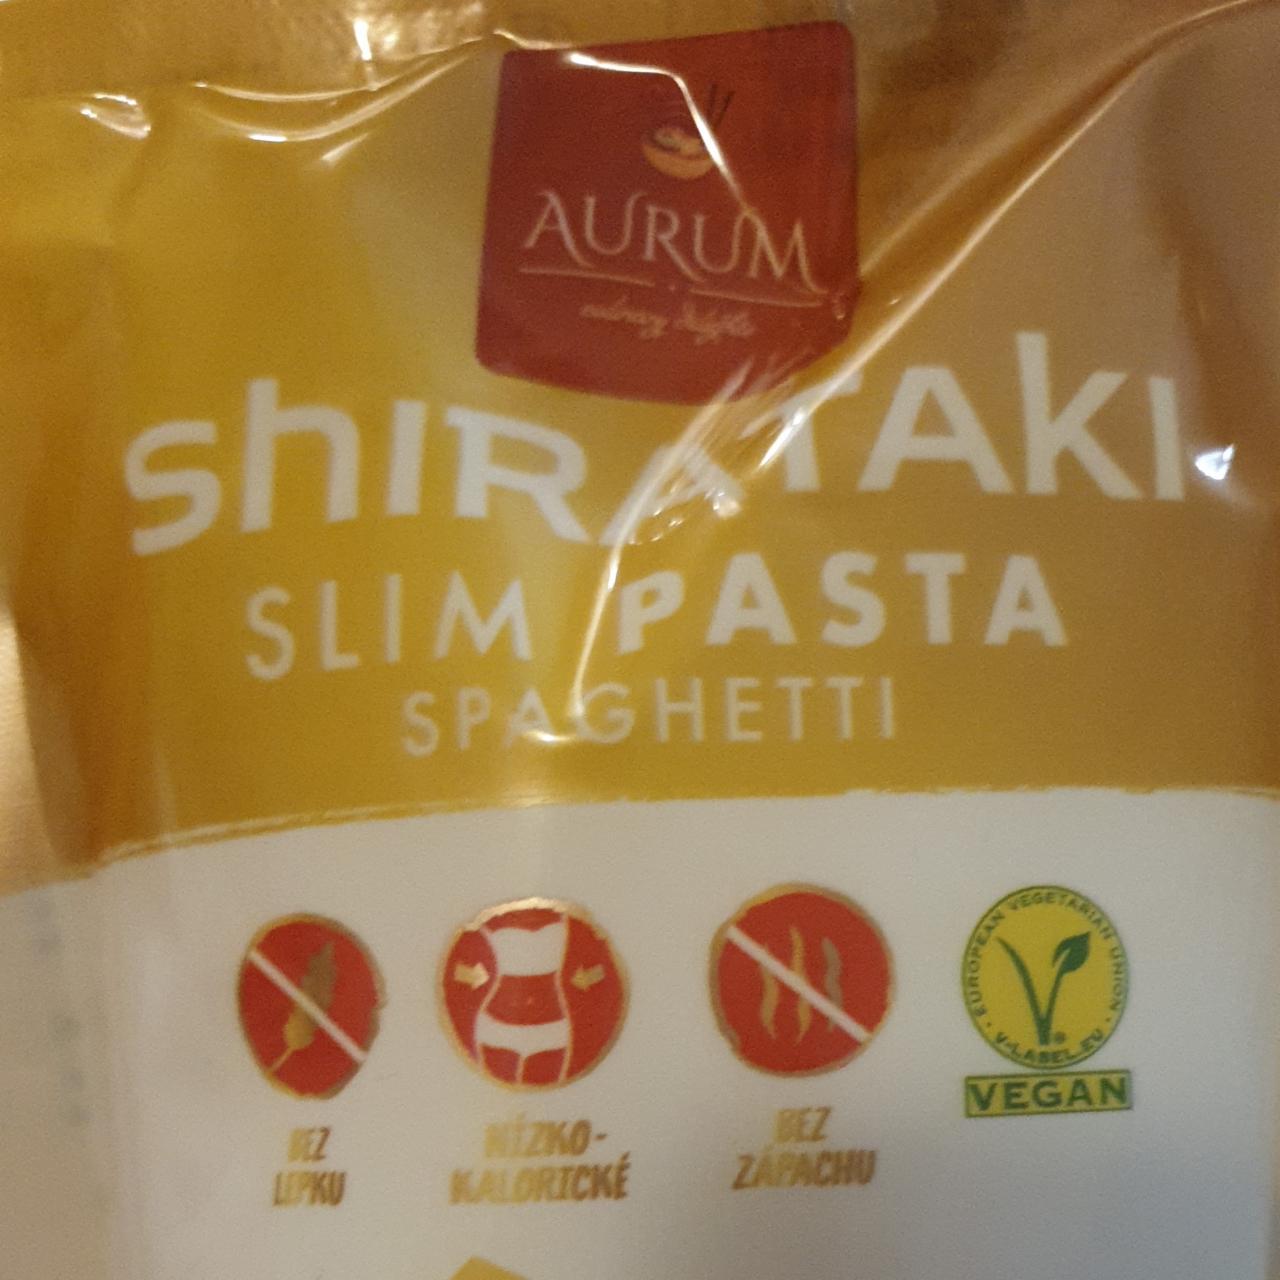 Fotografie - Shirataki slim pasta spaghetti Aurum